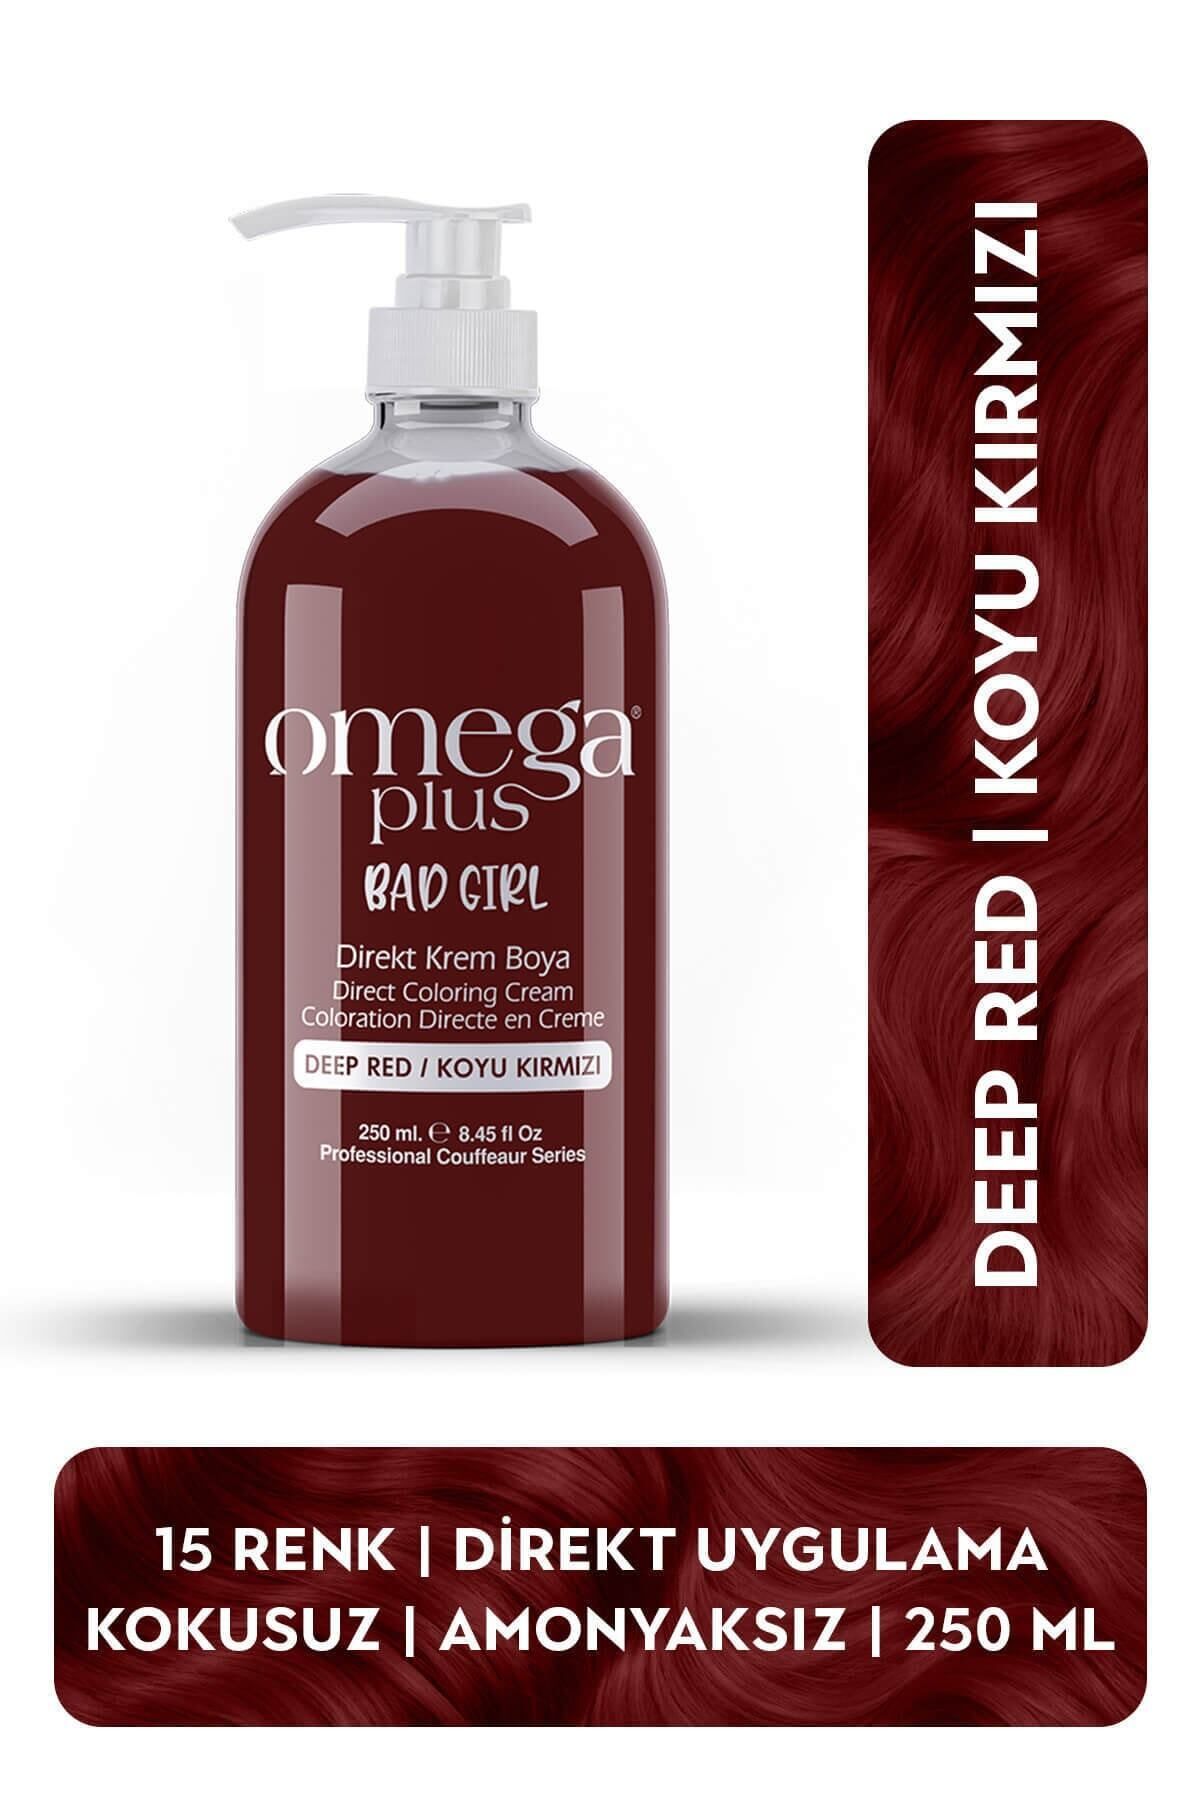 Omega Plus Bad Girl Koyu Kırmızı Amonyaksız Renkli Saç Boyası 250ml